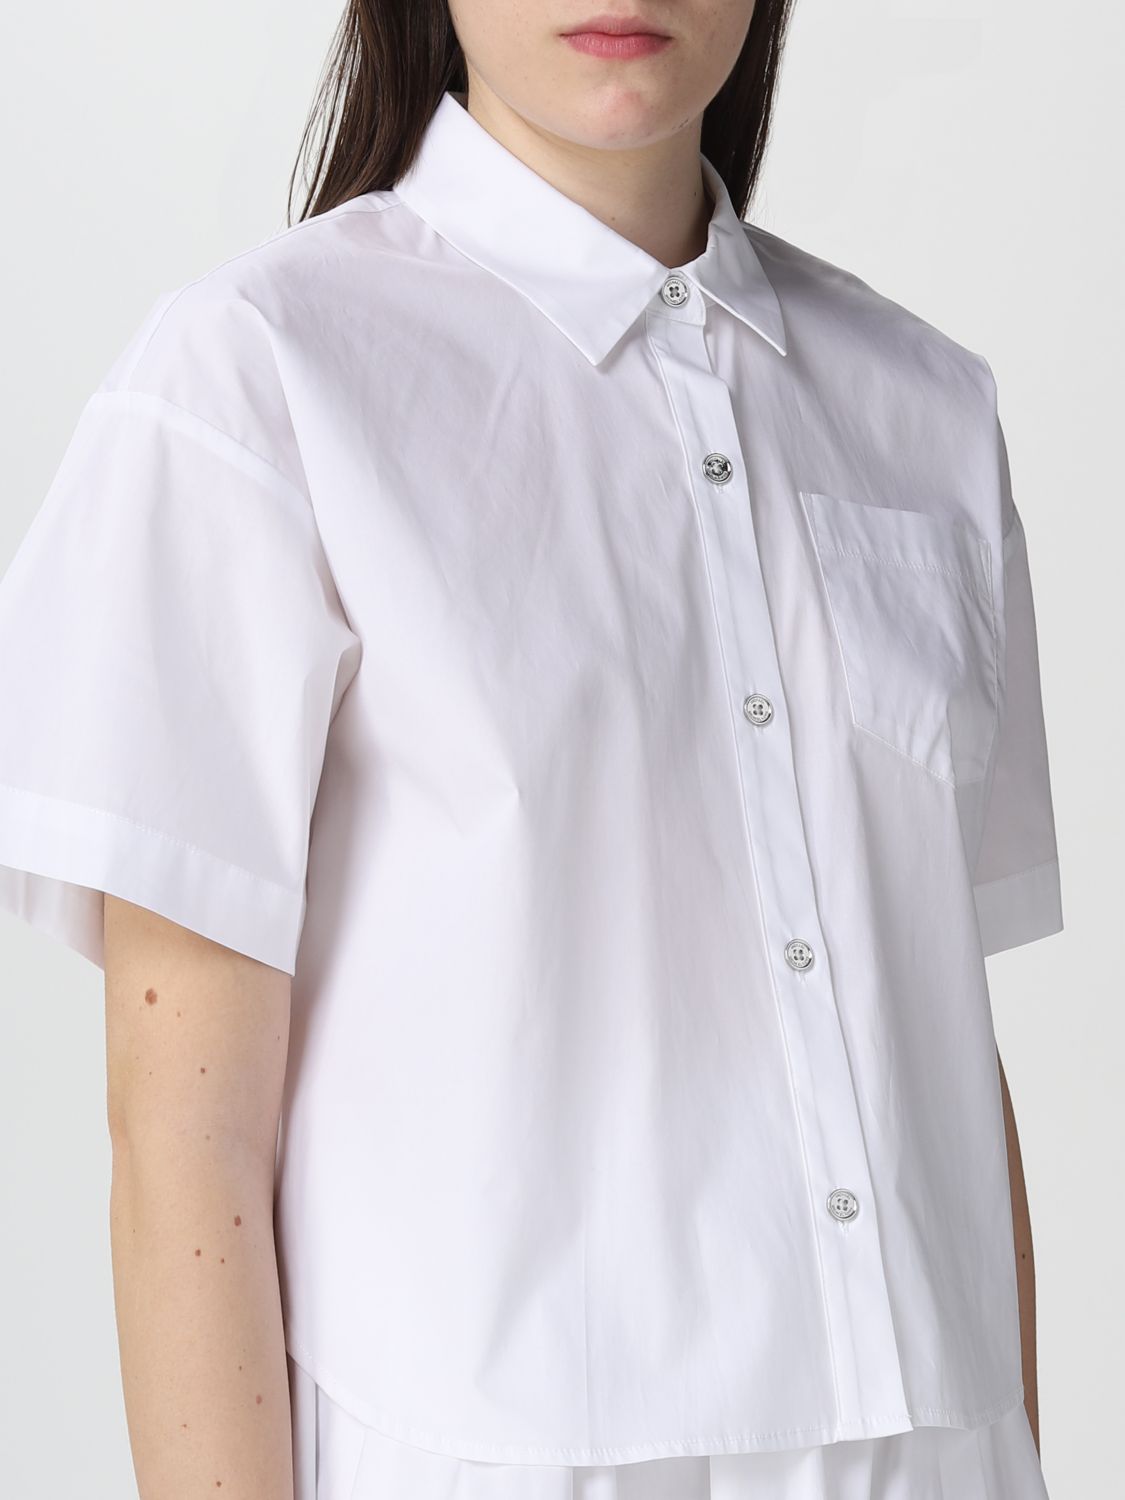 MICHAEL KORS: Camisa mujer, Blanco | Camisa Michael Kors MS340A7F4C en línea en GIGLIO.COM